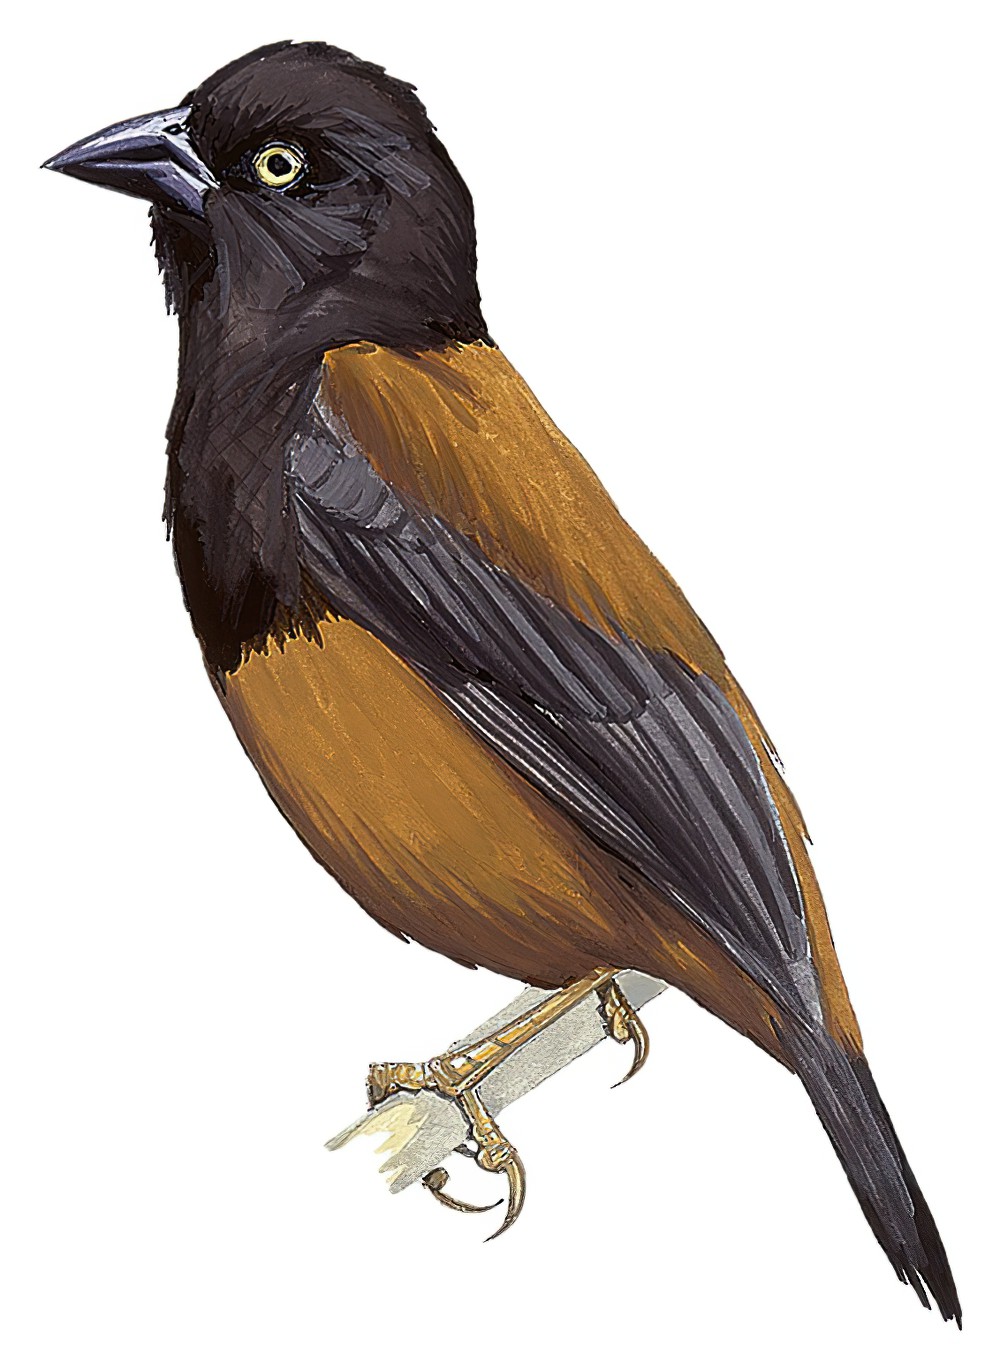 Vieillot\'s Weaver / Ploceus nigerrimus